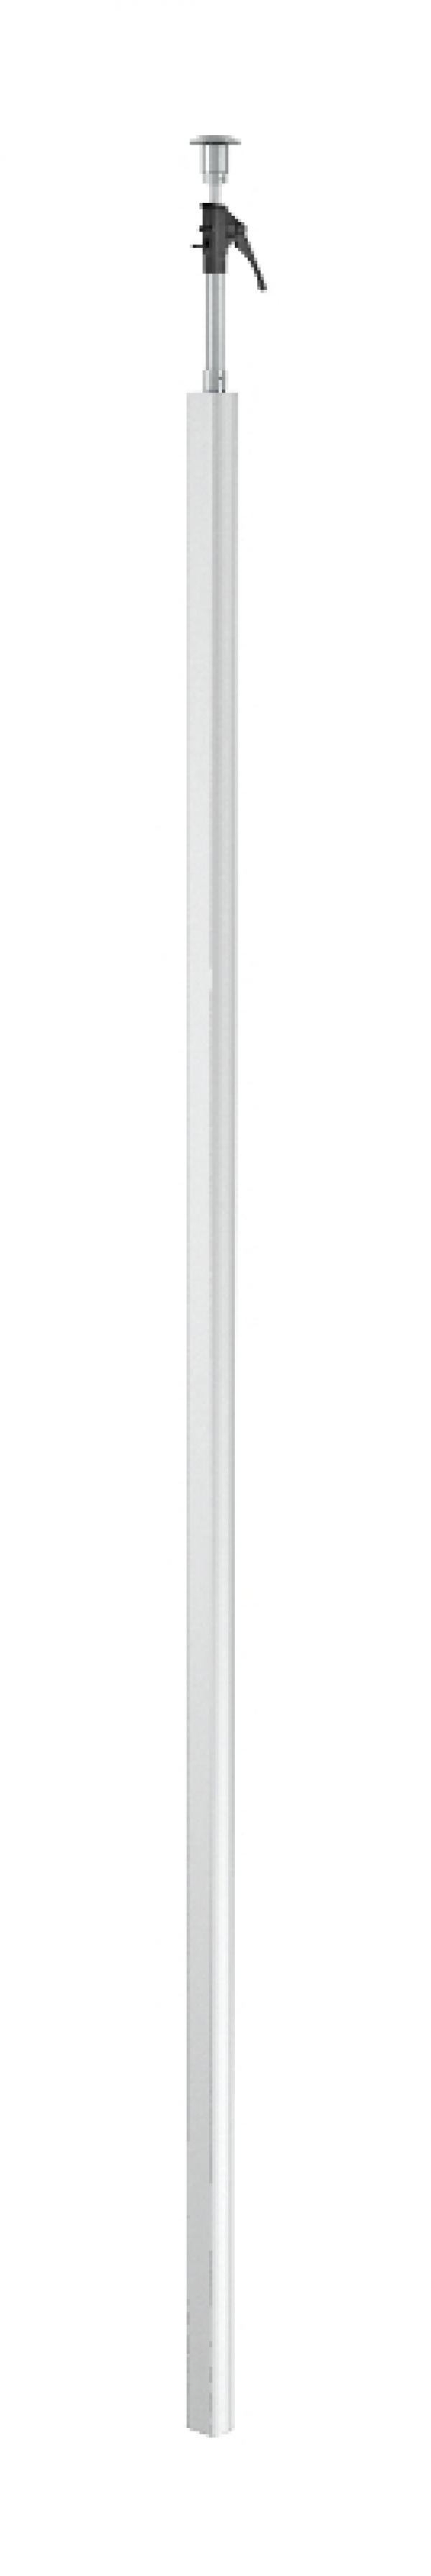 6290086 - OBO BETTERMANN Электромонтажная колонна 3,3-3,5 м 1-сторонняя Modul45 70x3000 мм (алюминий,белый) (ISSRM45RW).